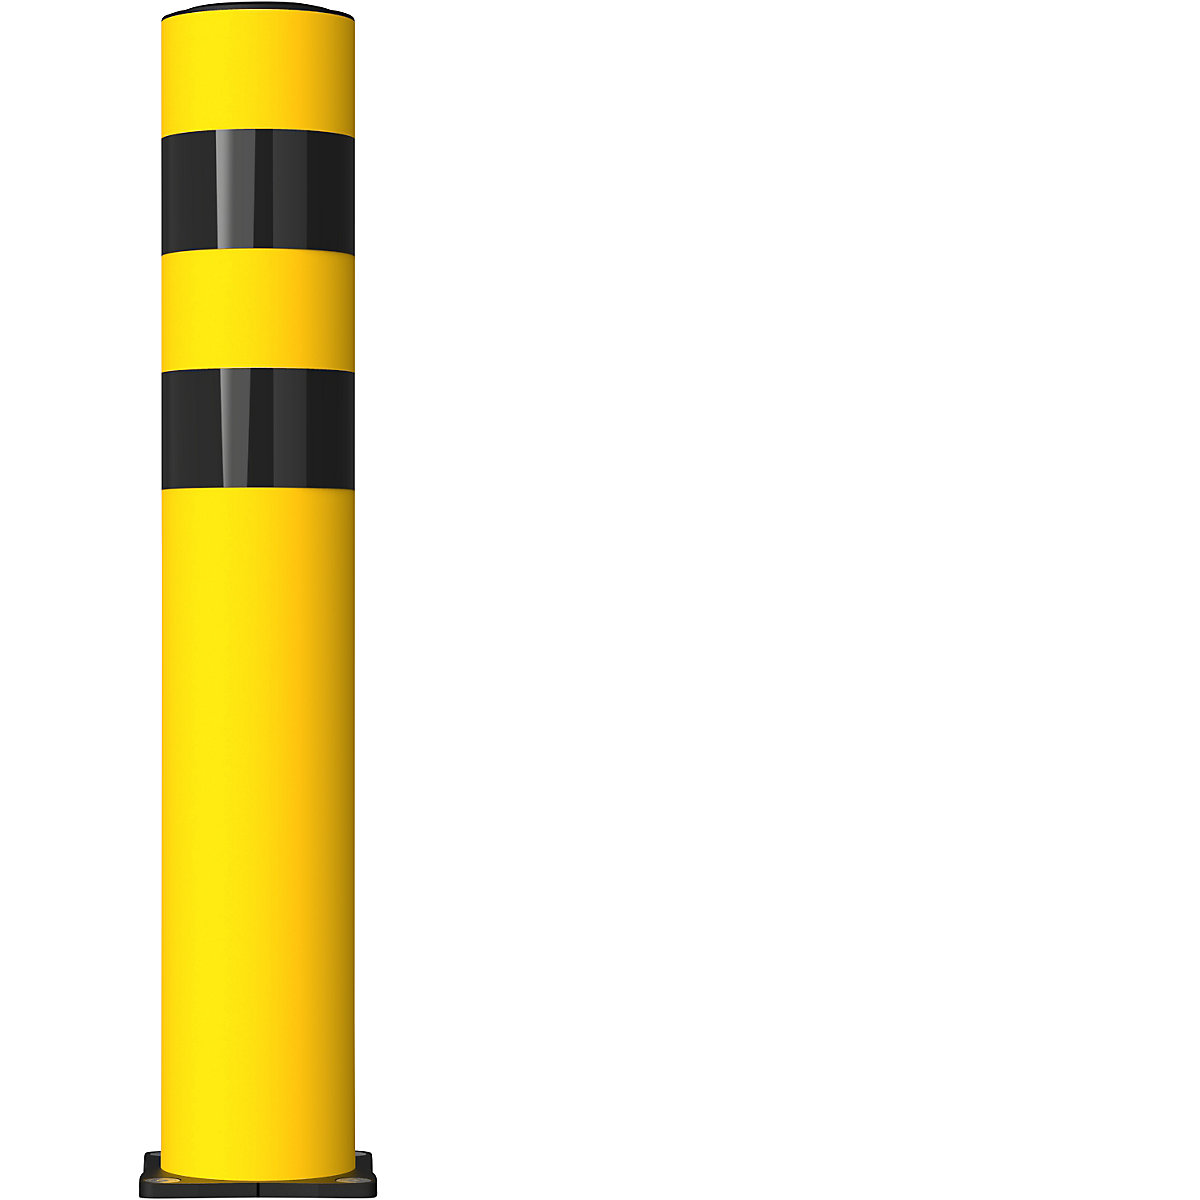 FLEX IMPACT Ütközésvédő terelőoszlop, Ø 125 mm, magasság 750 mm, sárga, 2 fényvisszaverő csík, horganyzott talplemez